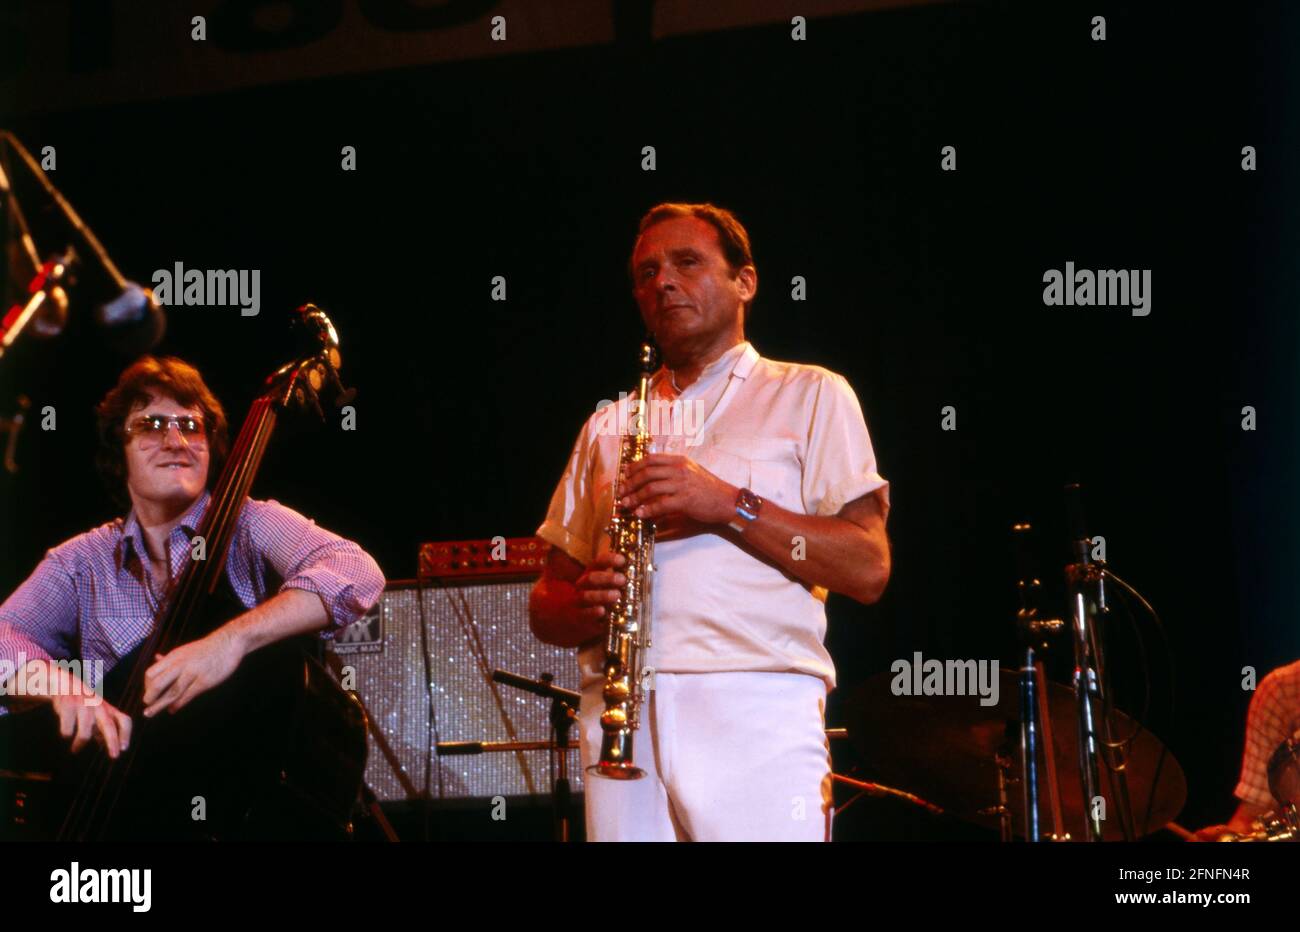 Stan Getz, amerikanischer Jazz-sassofonista, bei einem Auftritt, 1980. STAN GETZ, suonatore sassofono jazz americano, performance, 1980. Foto Stock